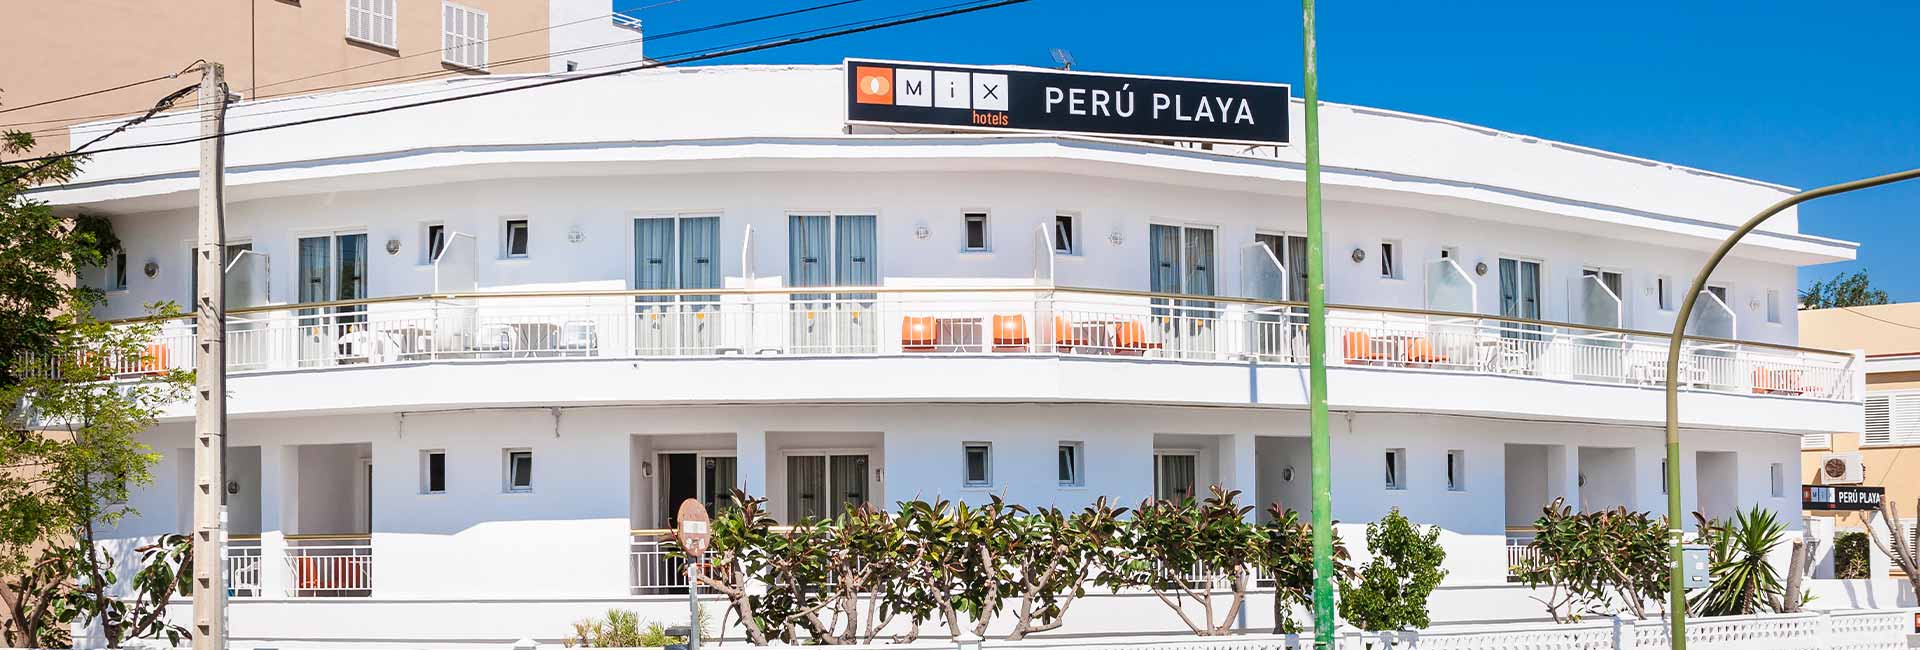 Bienvenido al HR Mix Perú Playa